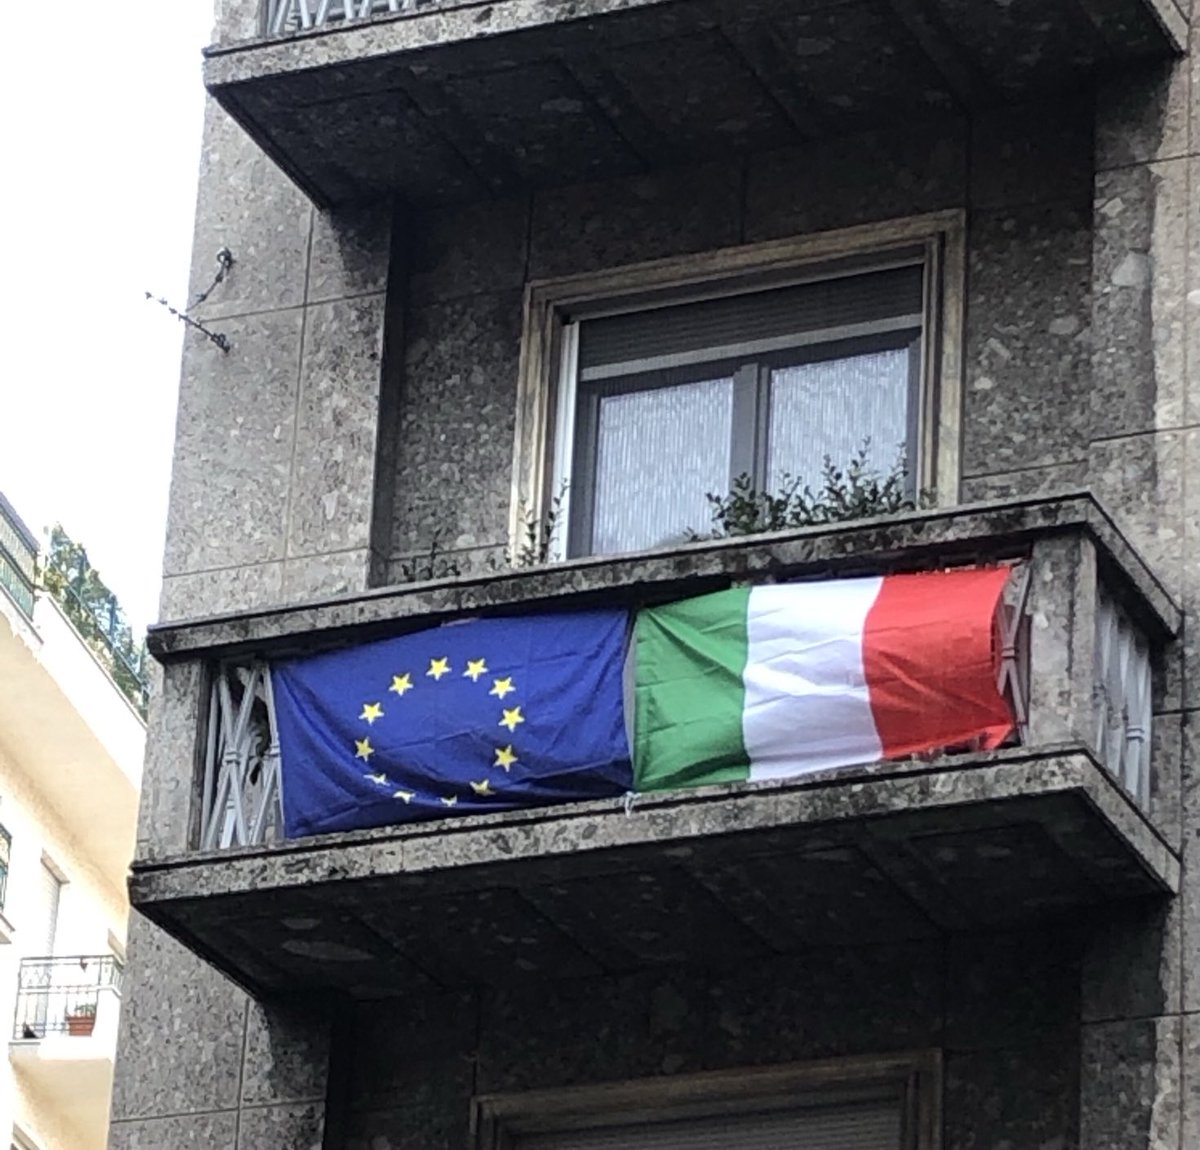 Le bandiere sono esposte
Che la festa della liberazione dai populismi abbia inizio🎖
Viva l’ Italia 🇮🇹 e l’Europa🇪🇺
#scelgoio